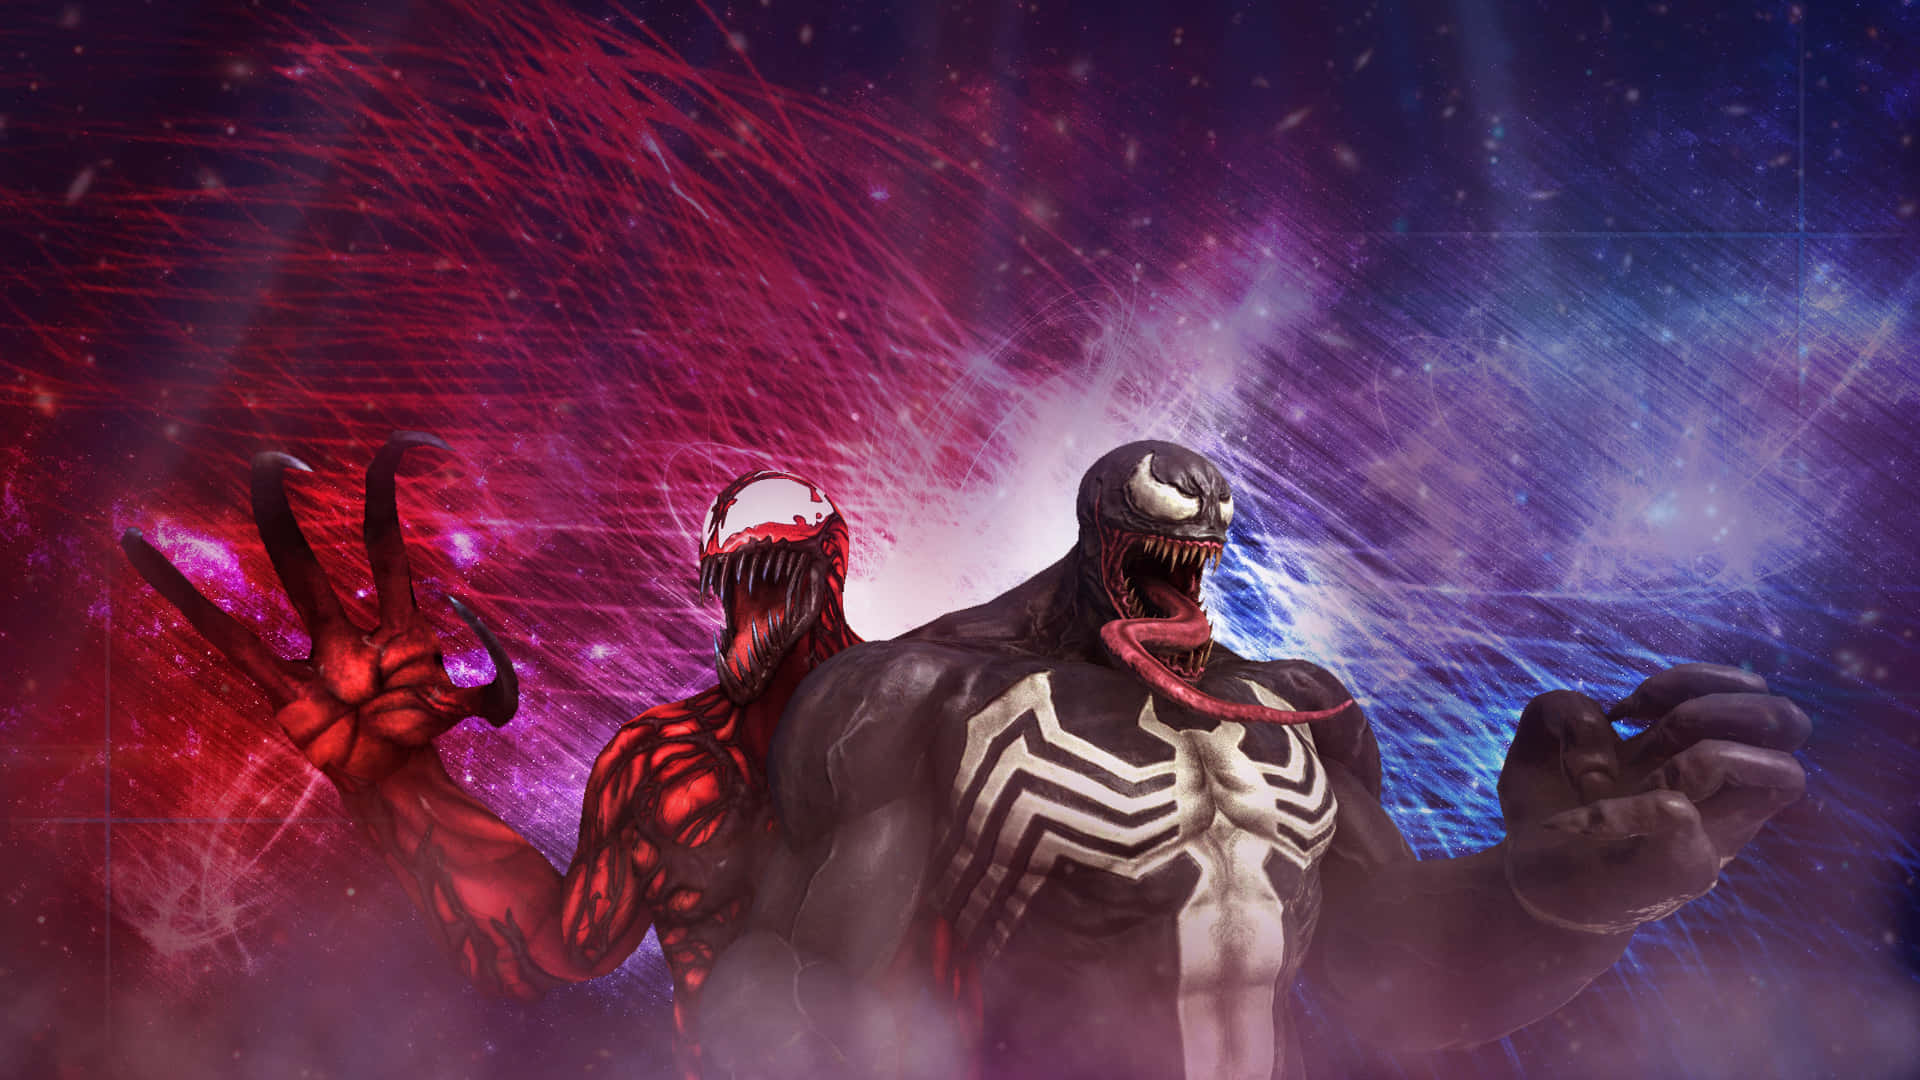 Venommot Carnage - Det Ultimata Sammandrabbningen. Wallpaper